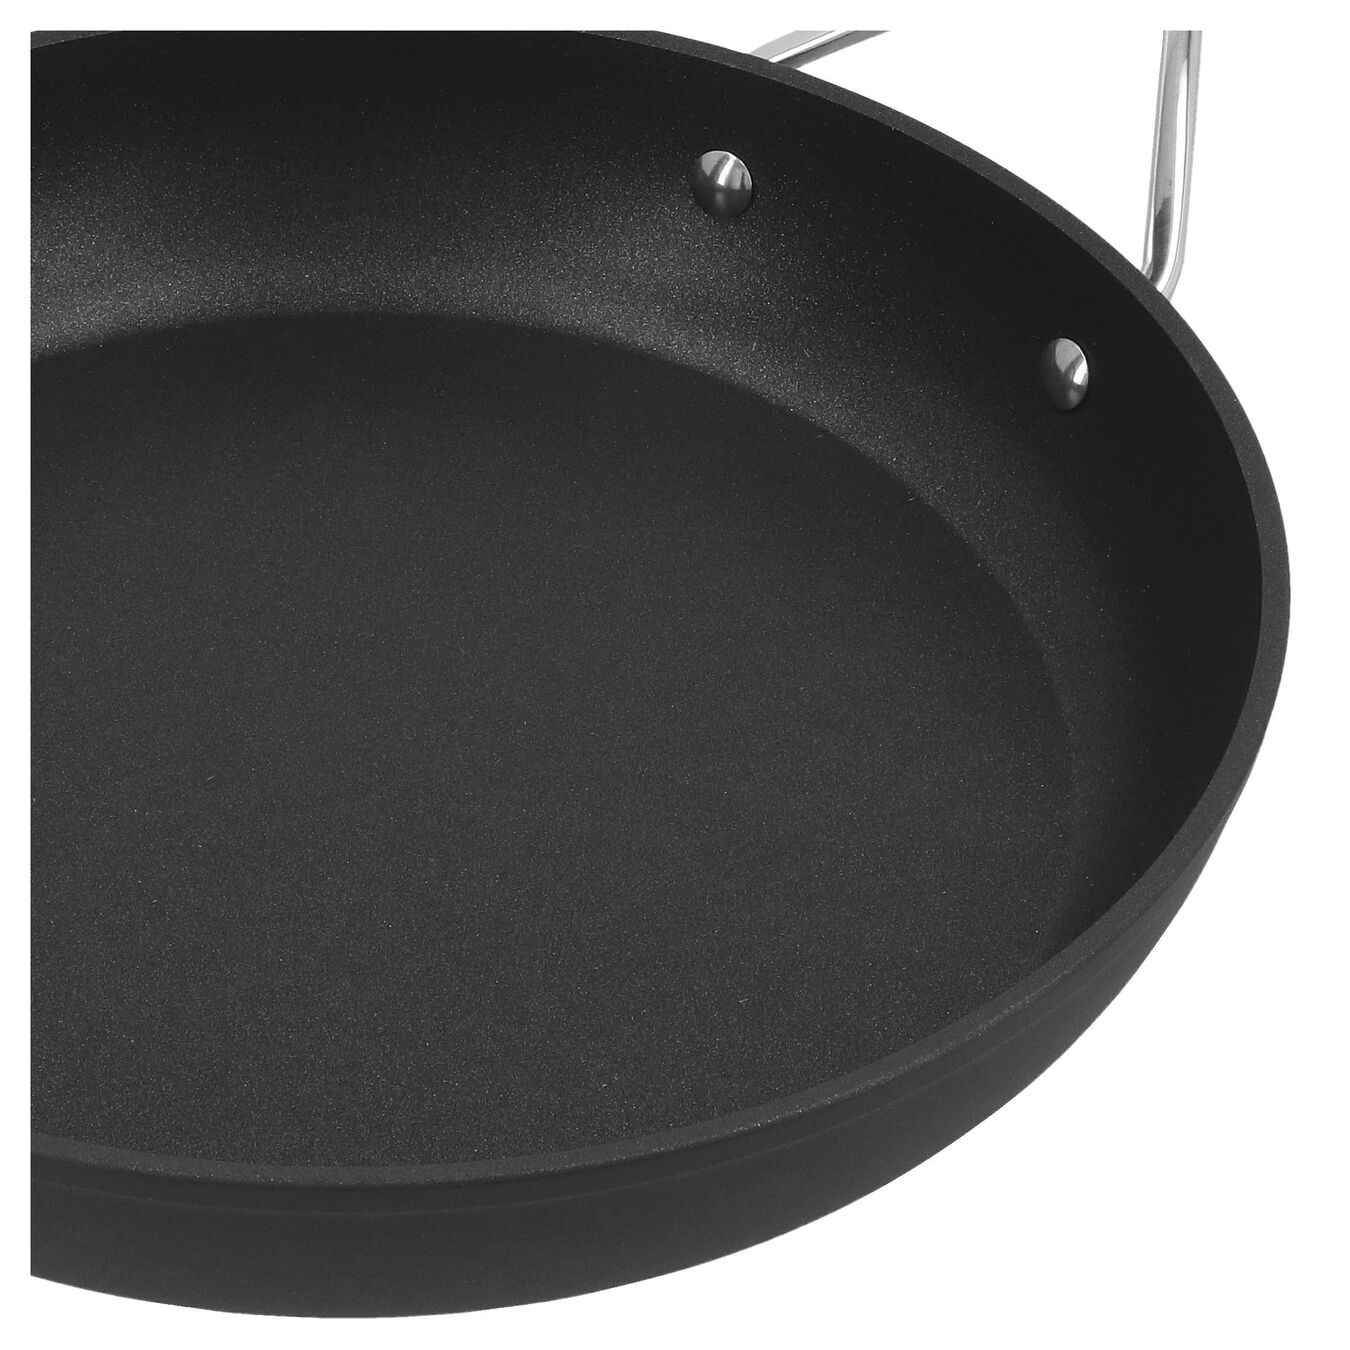 28 cm Aluminium Frying pan silver-black,,large 3